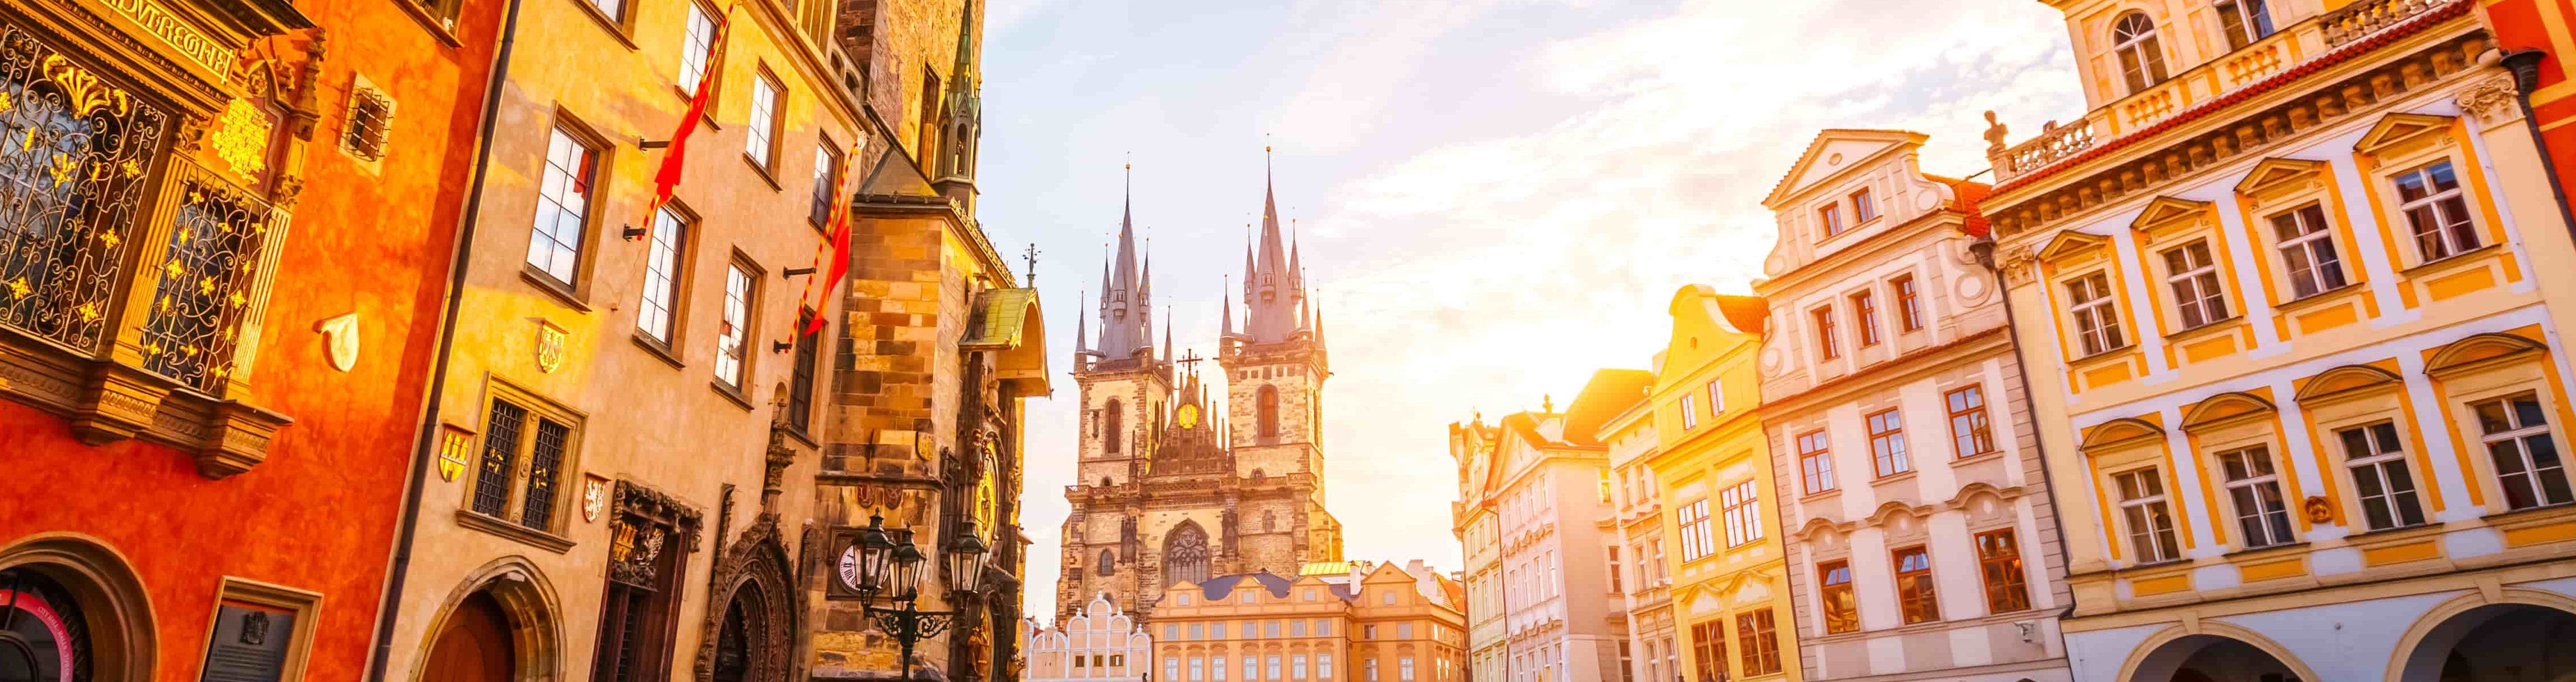 SkyUp Airlines открывает продажу билетов на рейс из Запорожья в Прагу